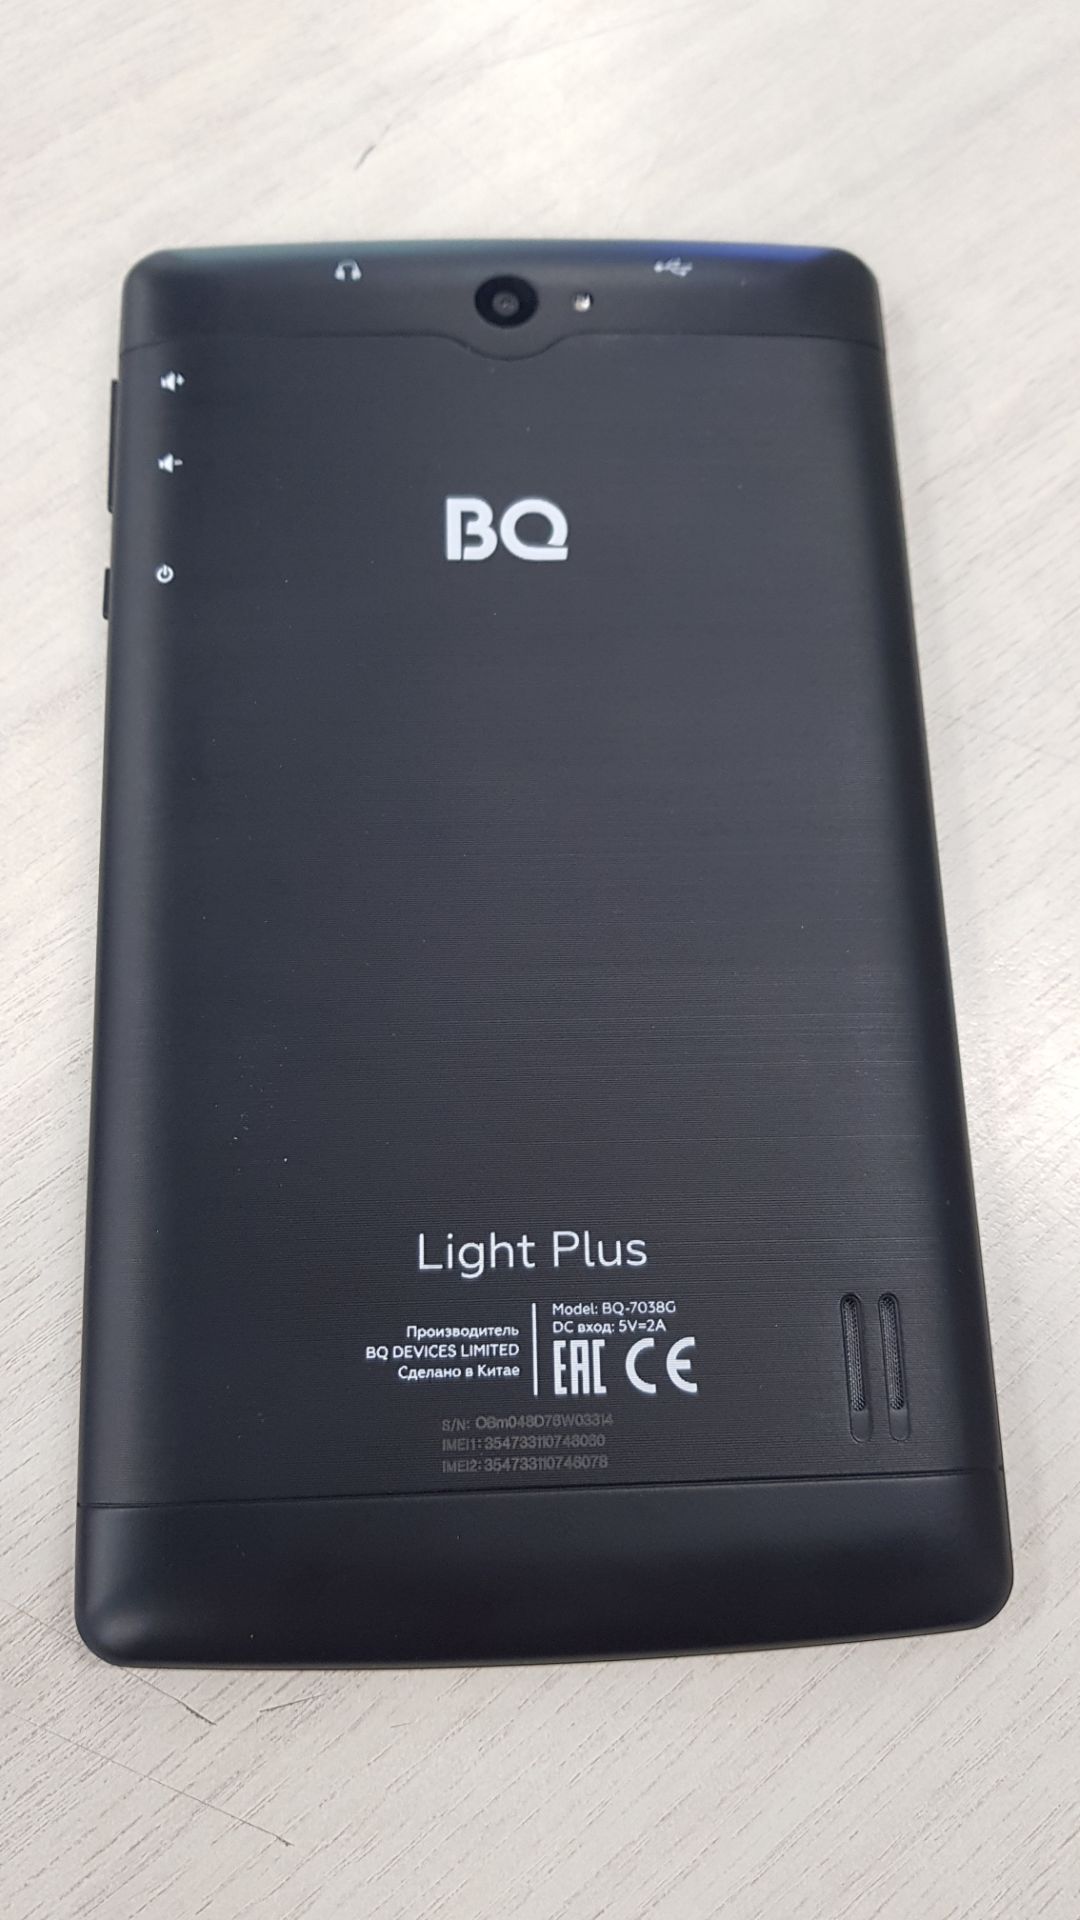 Планшет BQ 7038G Light Plus 16Gb 3G BLACK хорошее состояние - фото 3